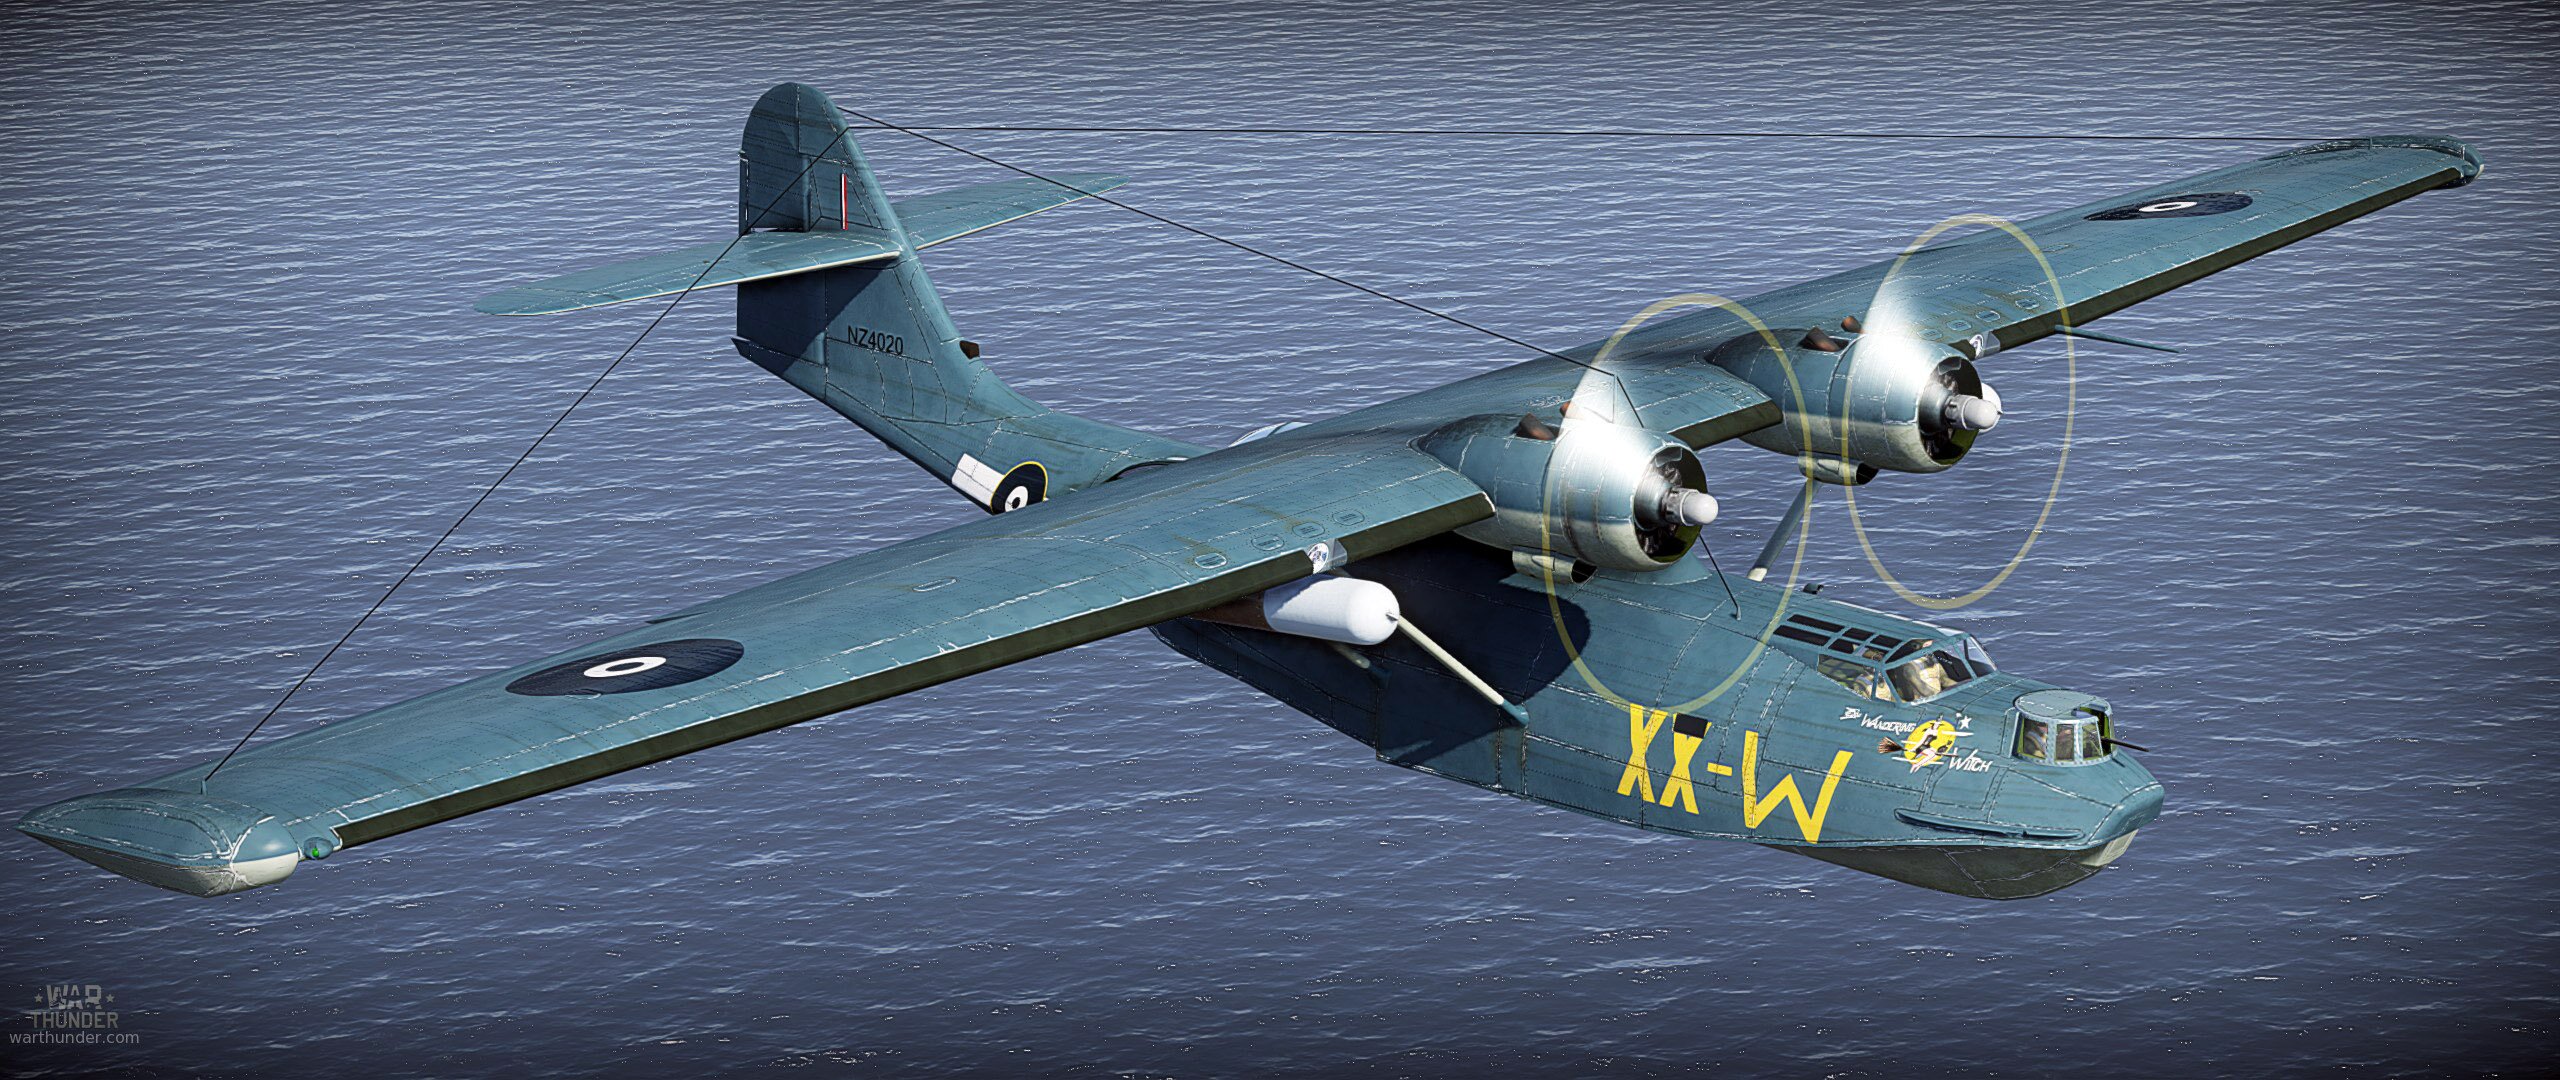 RNZAF PBY-5 Catalina NZ 4020 XX-W “The Wandering Witch” 6   1944  